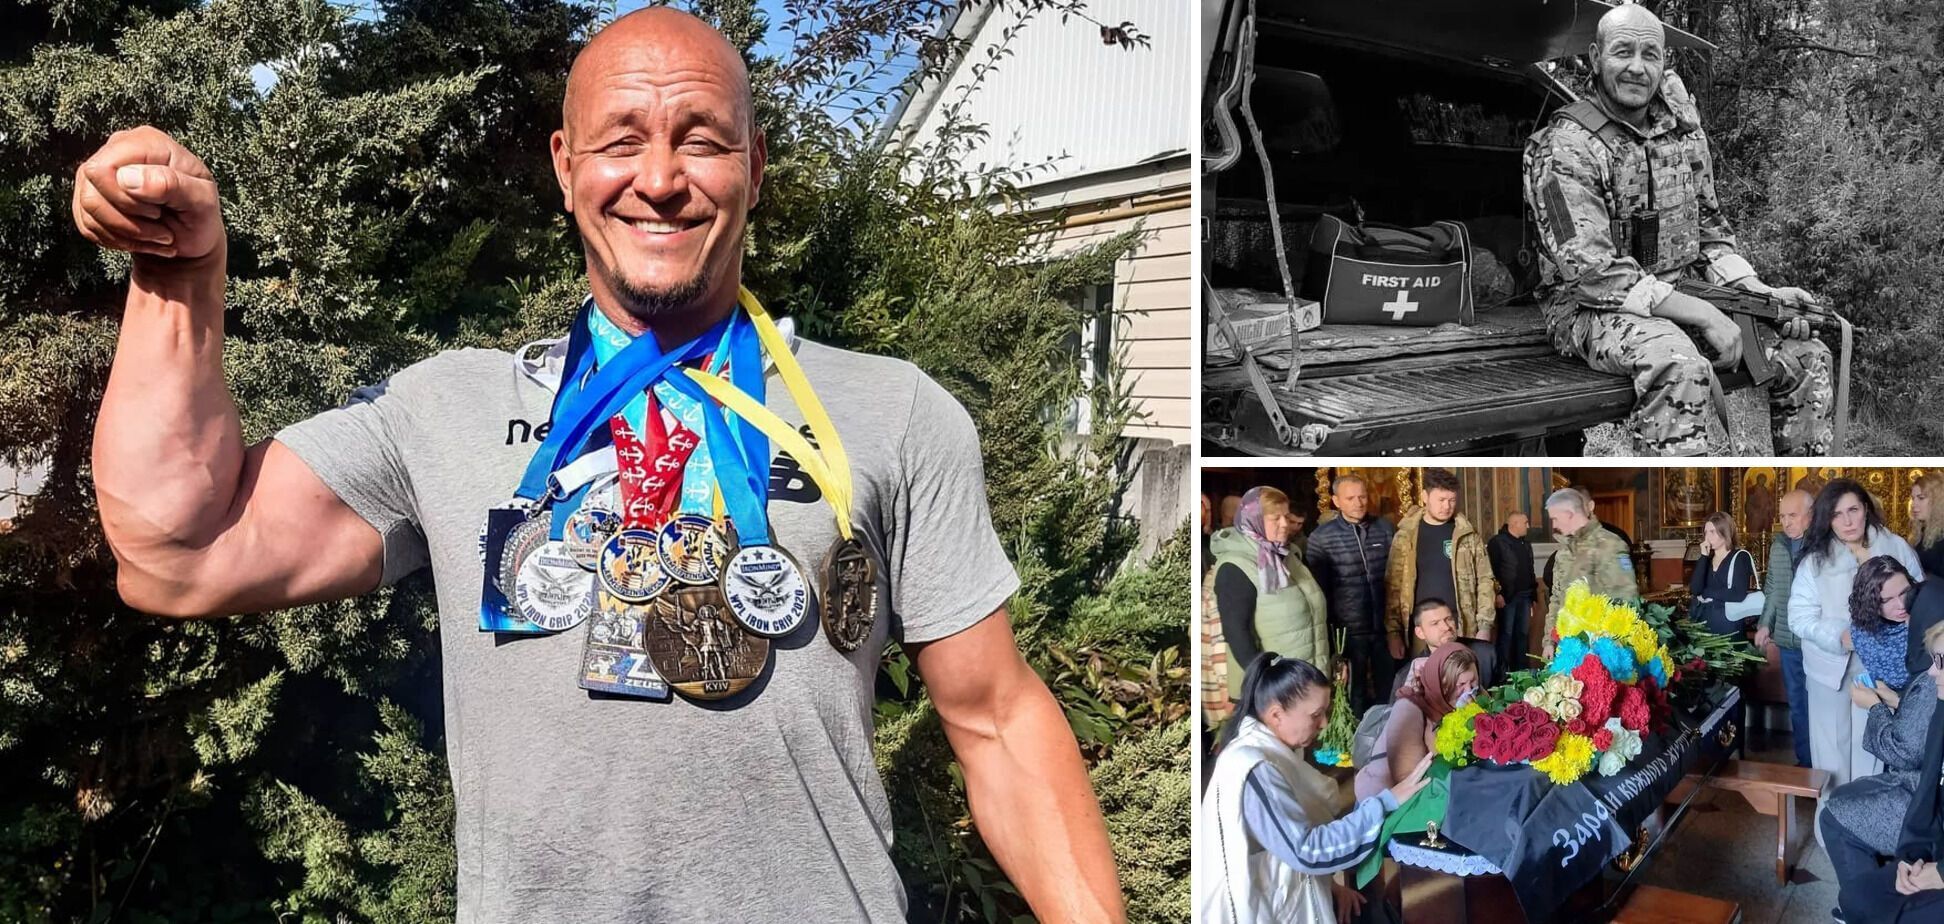 На войне с российскими оккупантами погиб рекордсмен Украины, становившийся чемпионом мира и Европы по пауэрлифтингу